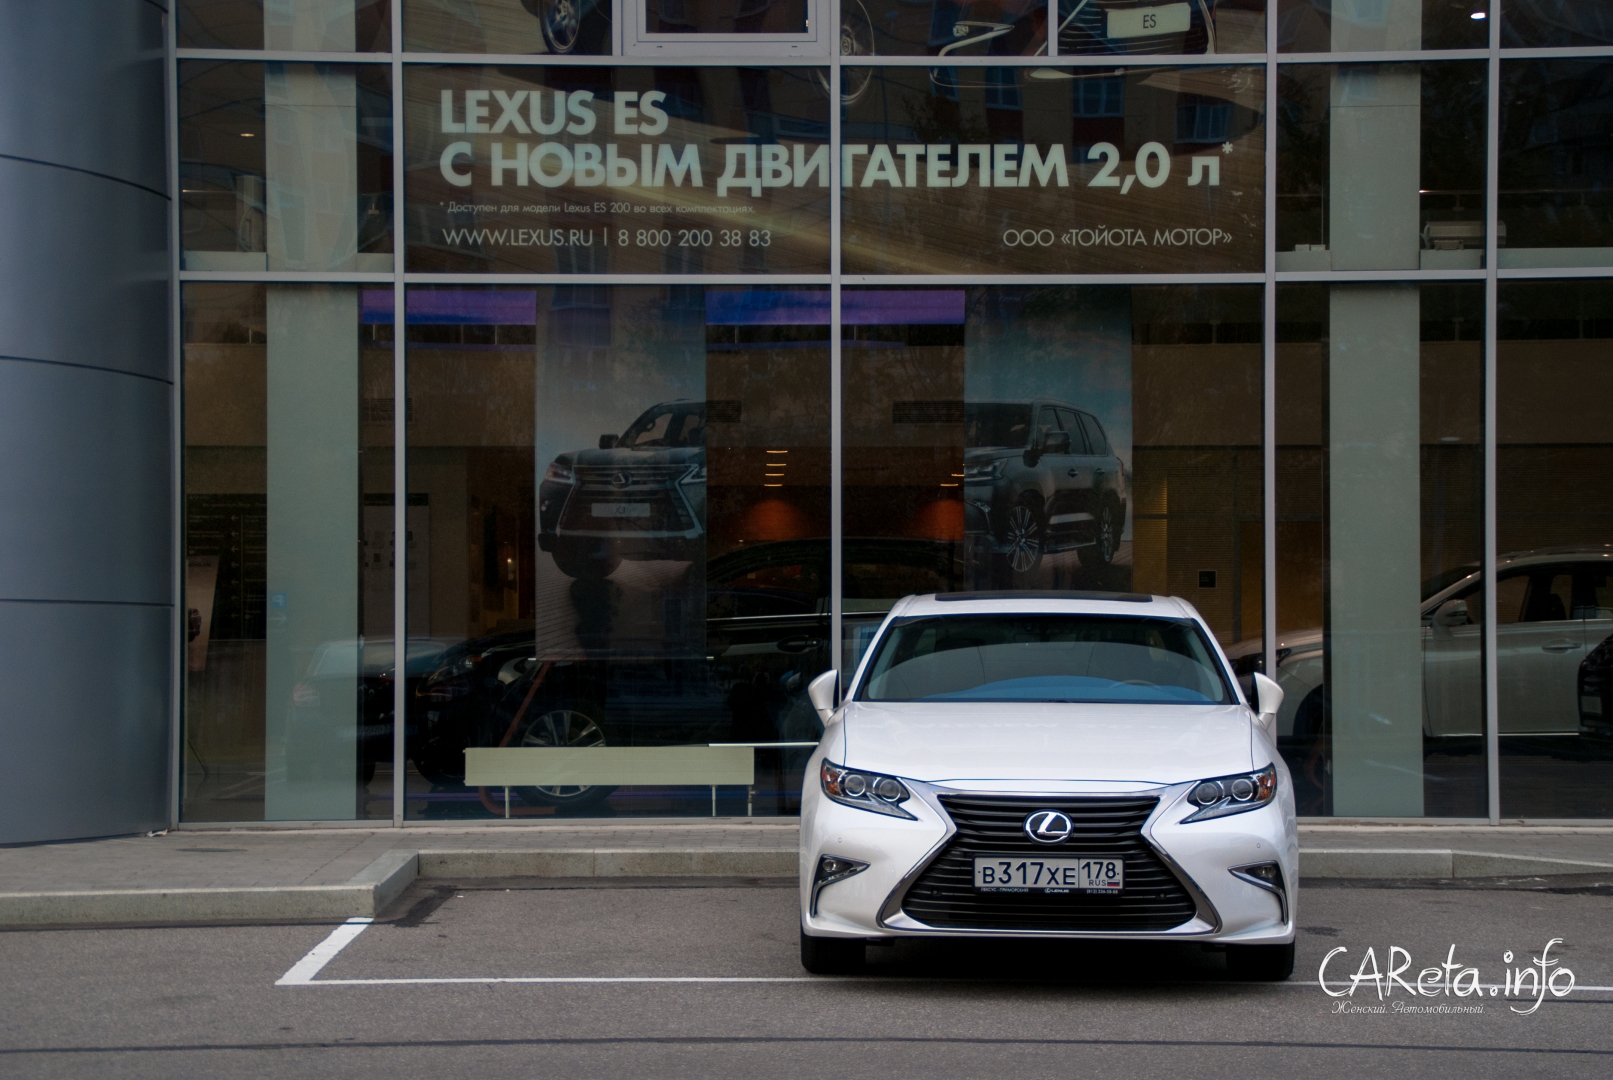 Lexus ES 250 - уже в дилерских центрах